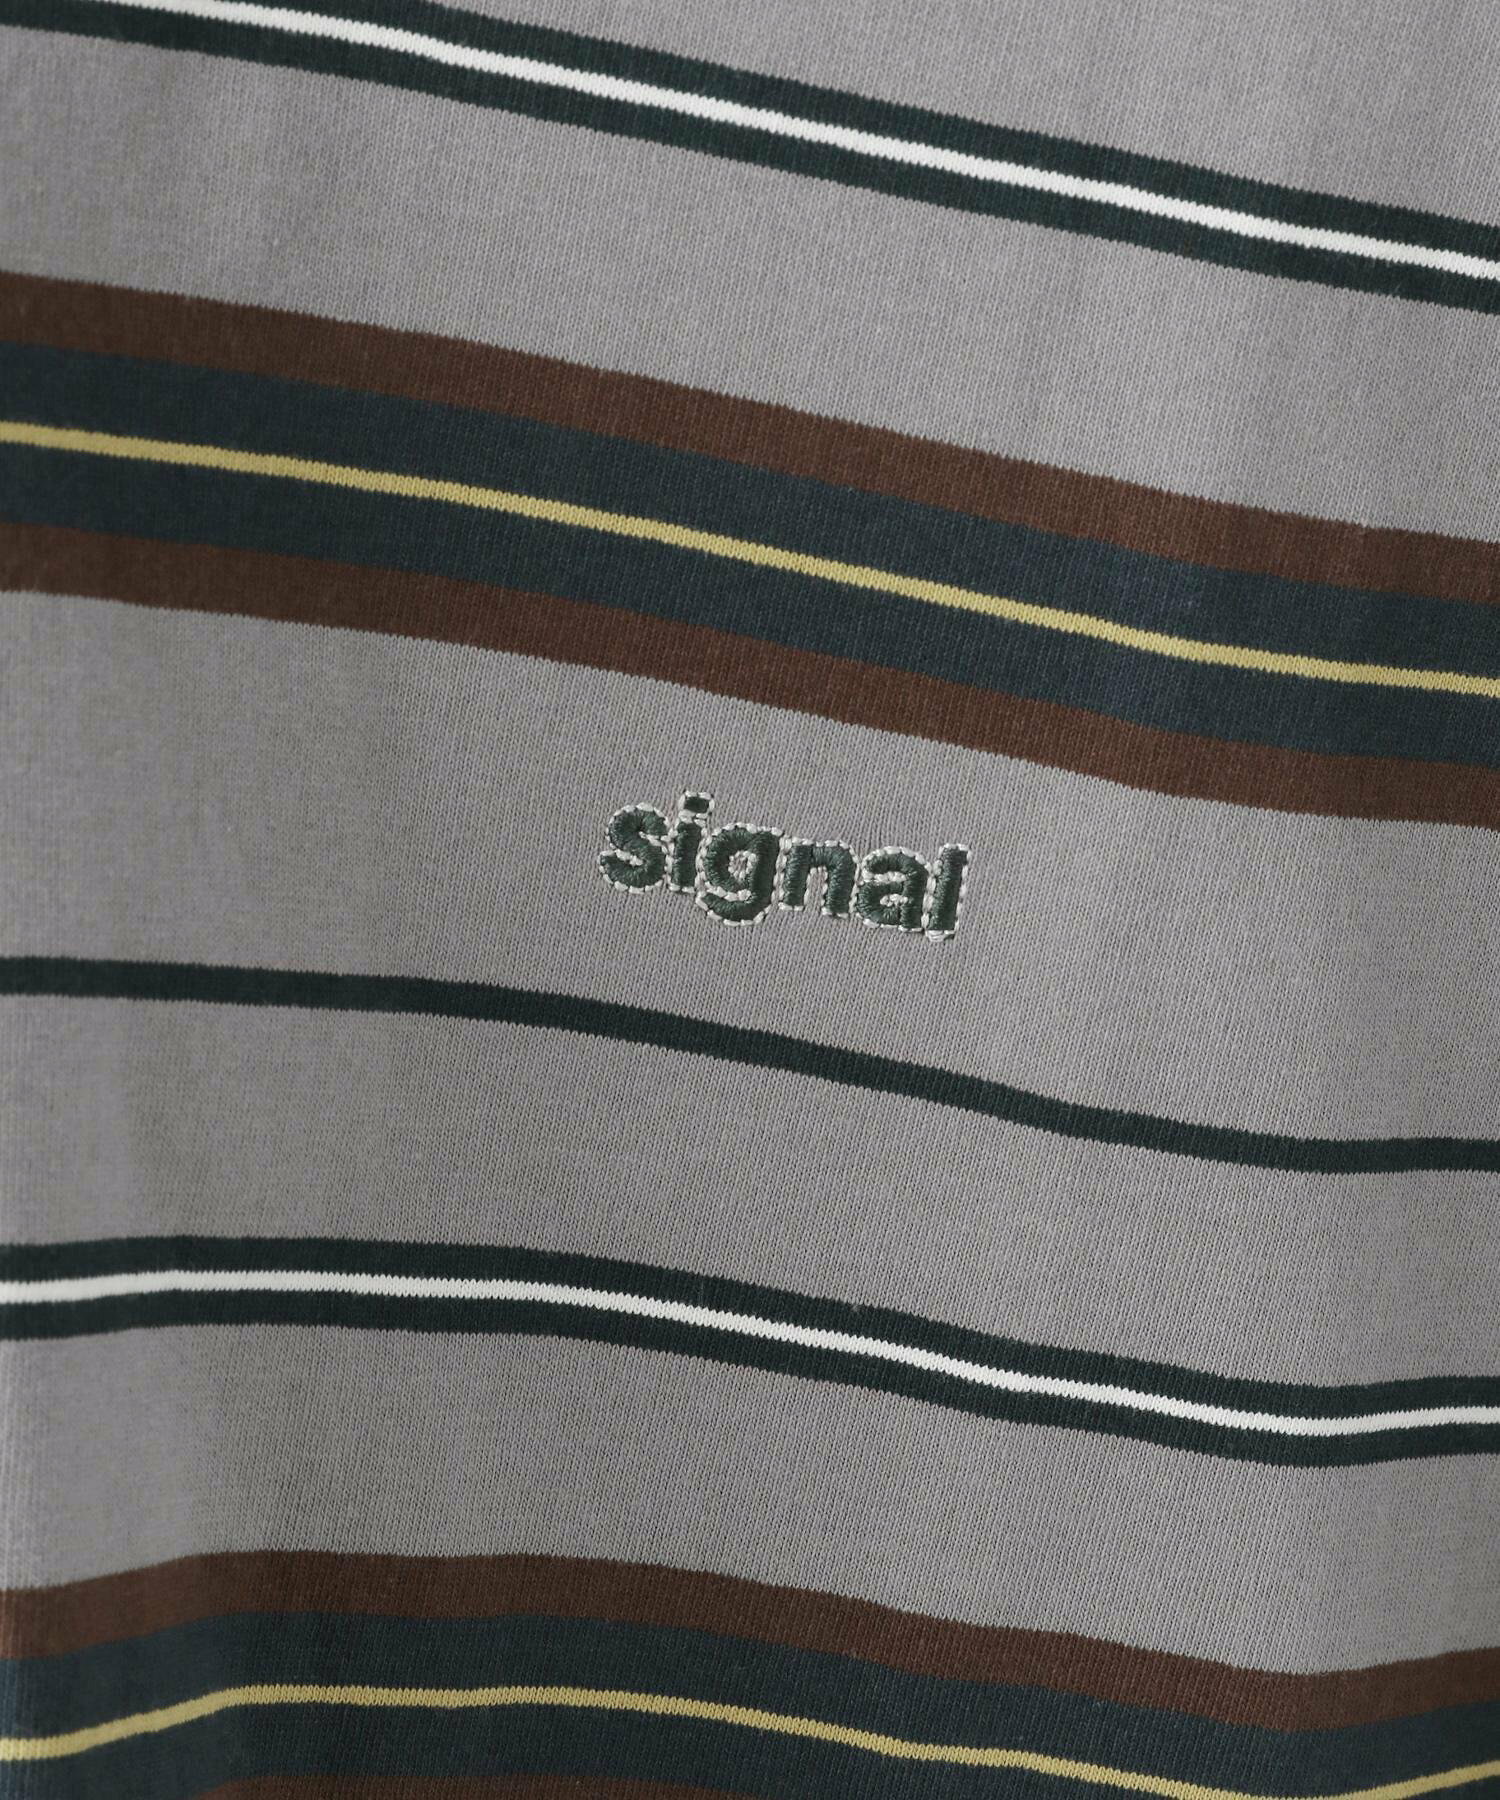 【SIGNAL SPORTS】ワンポイント刺繍/ボーダークルーネックオーバーTシャツ